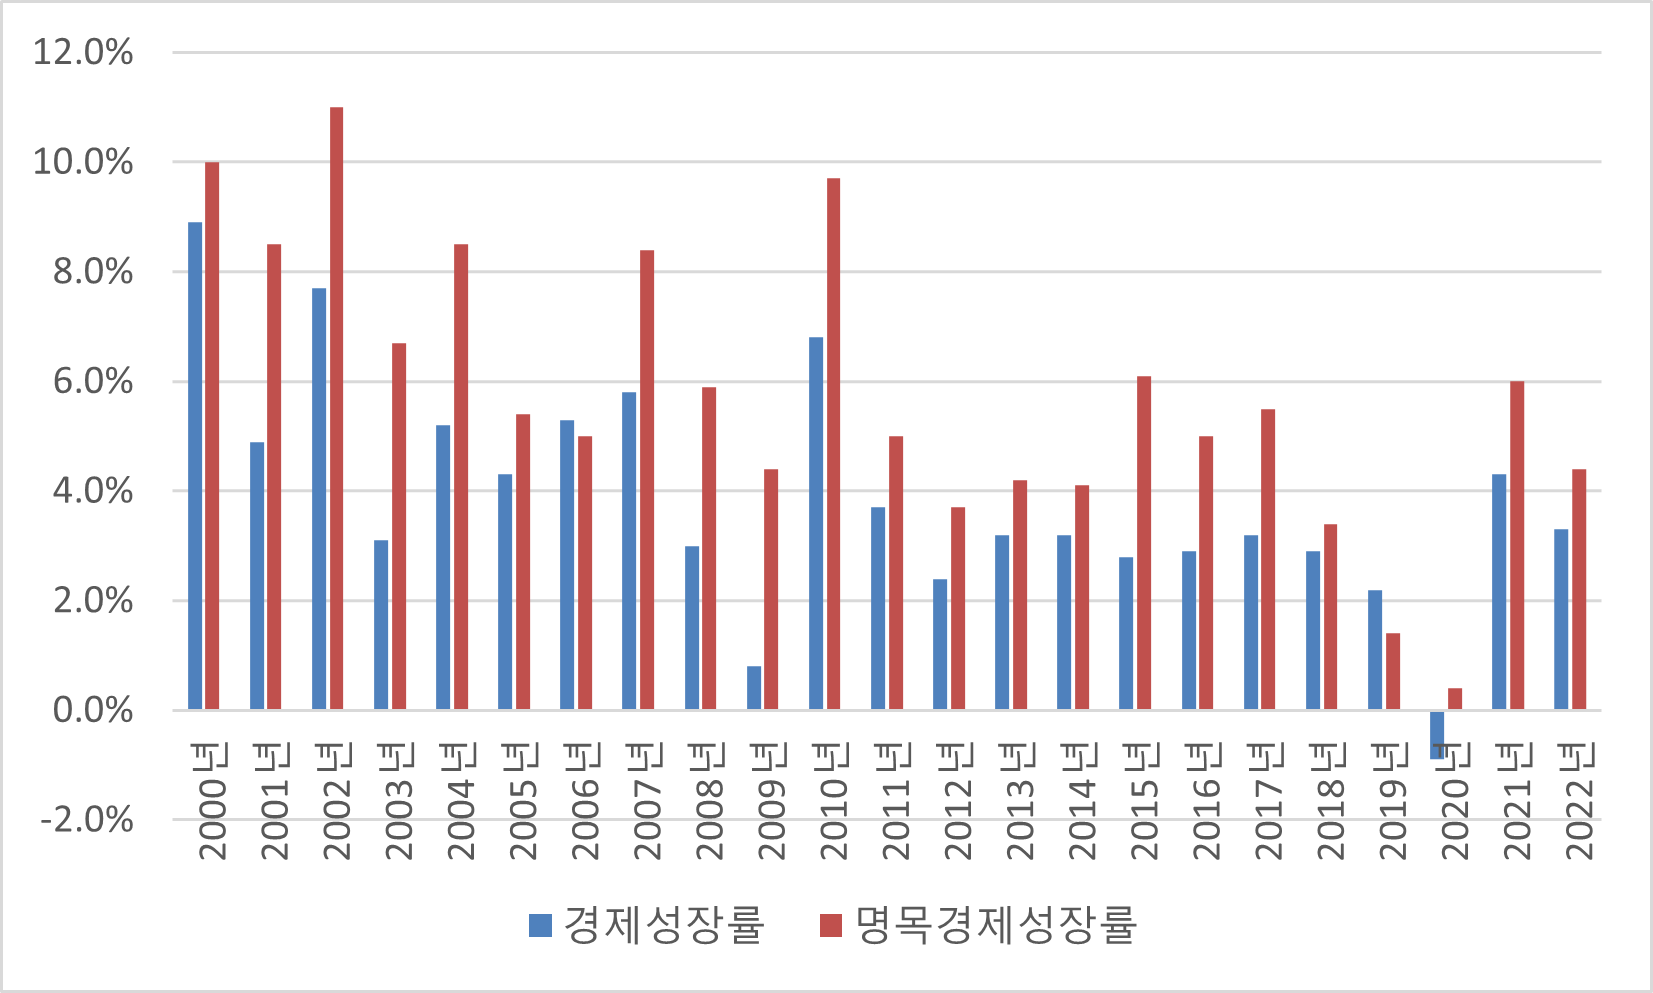 한국의 실질경제성장률 와 명목 경제 성장률, 자료 참조 : IMF 및 OECD